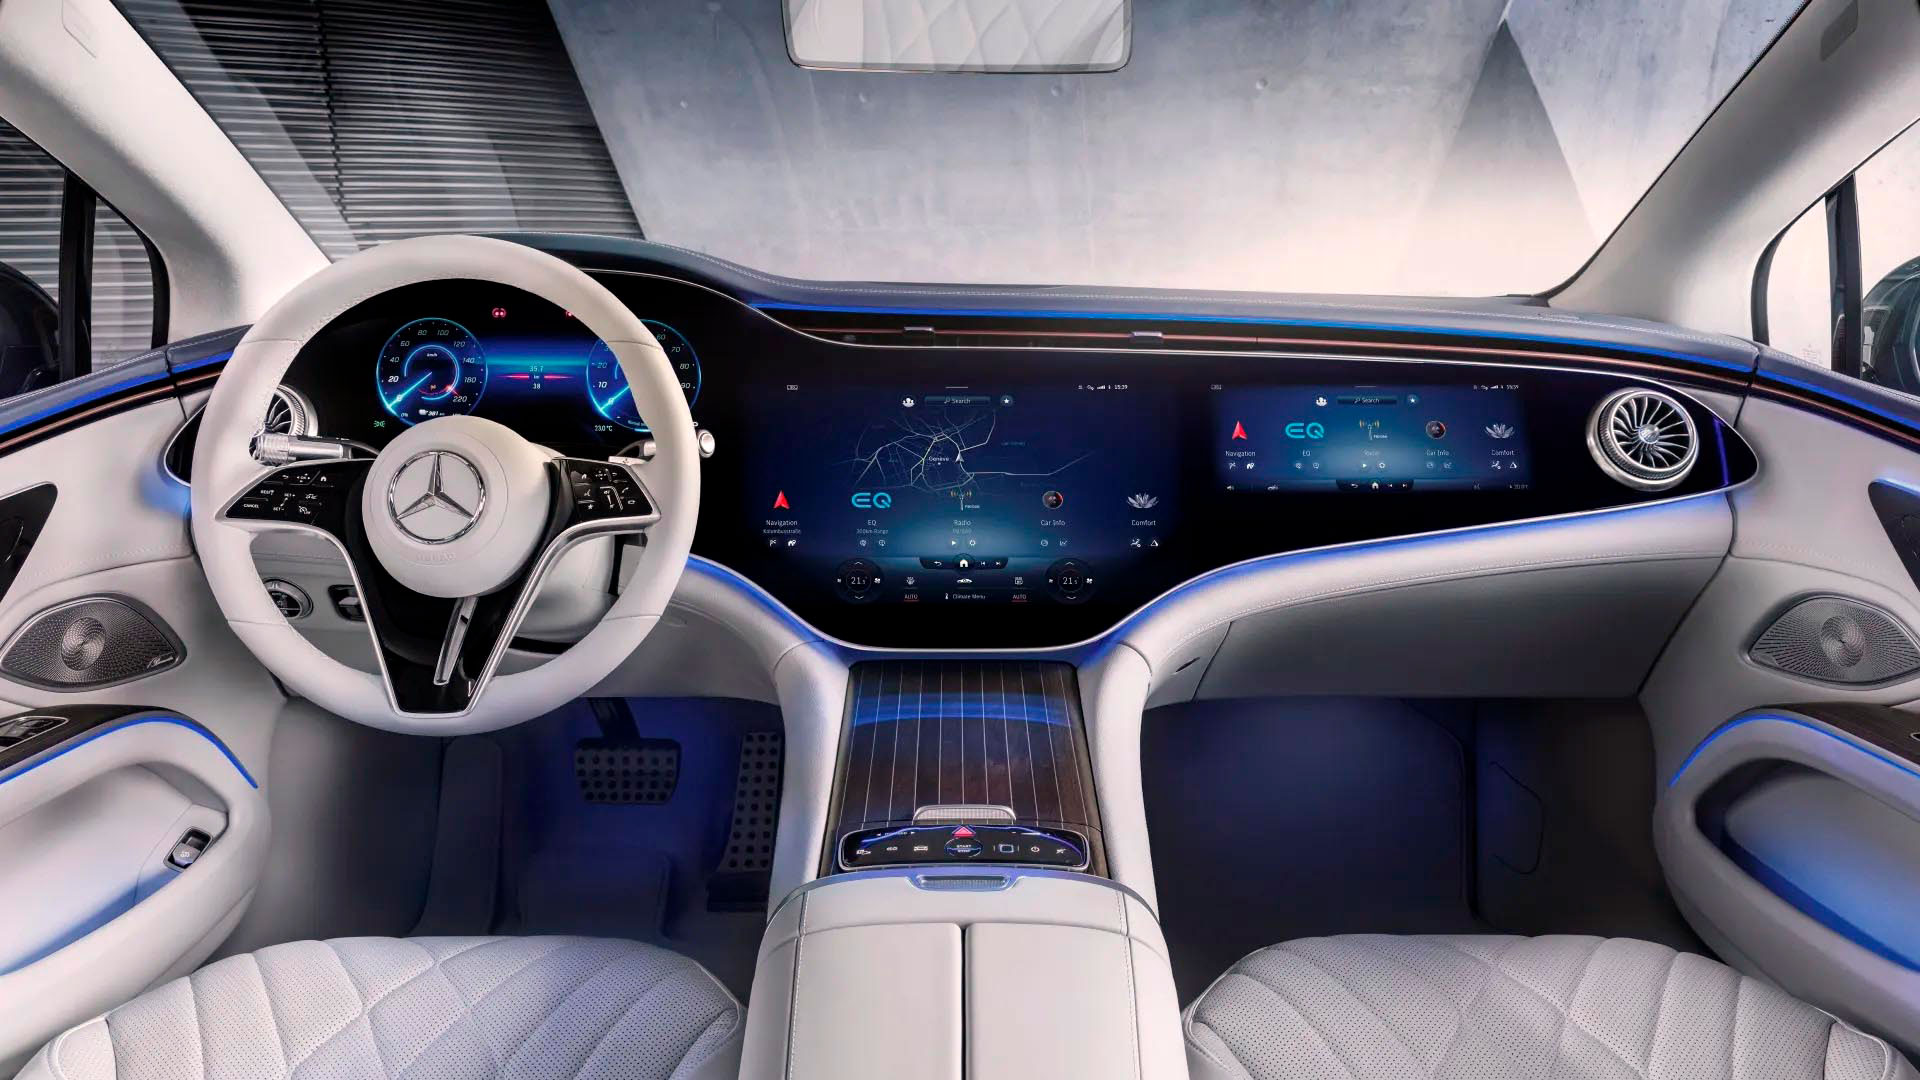 El MBUX Hyperscreen de la serie EV EQS de Mercedes-Benz es la pantalla integral más grande de los autos que se han visto hasta el momento